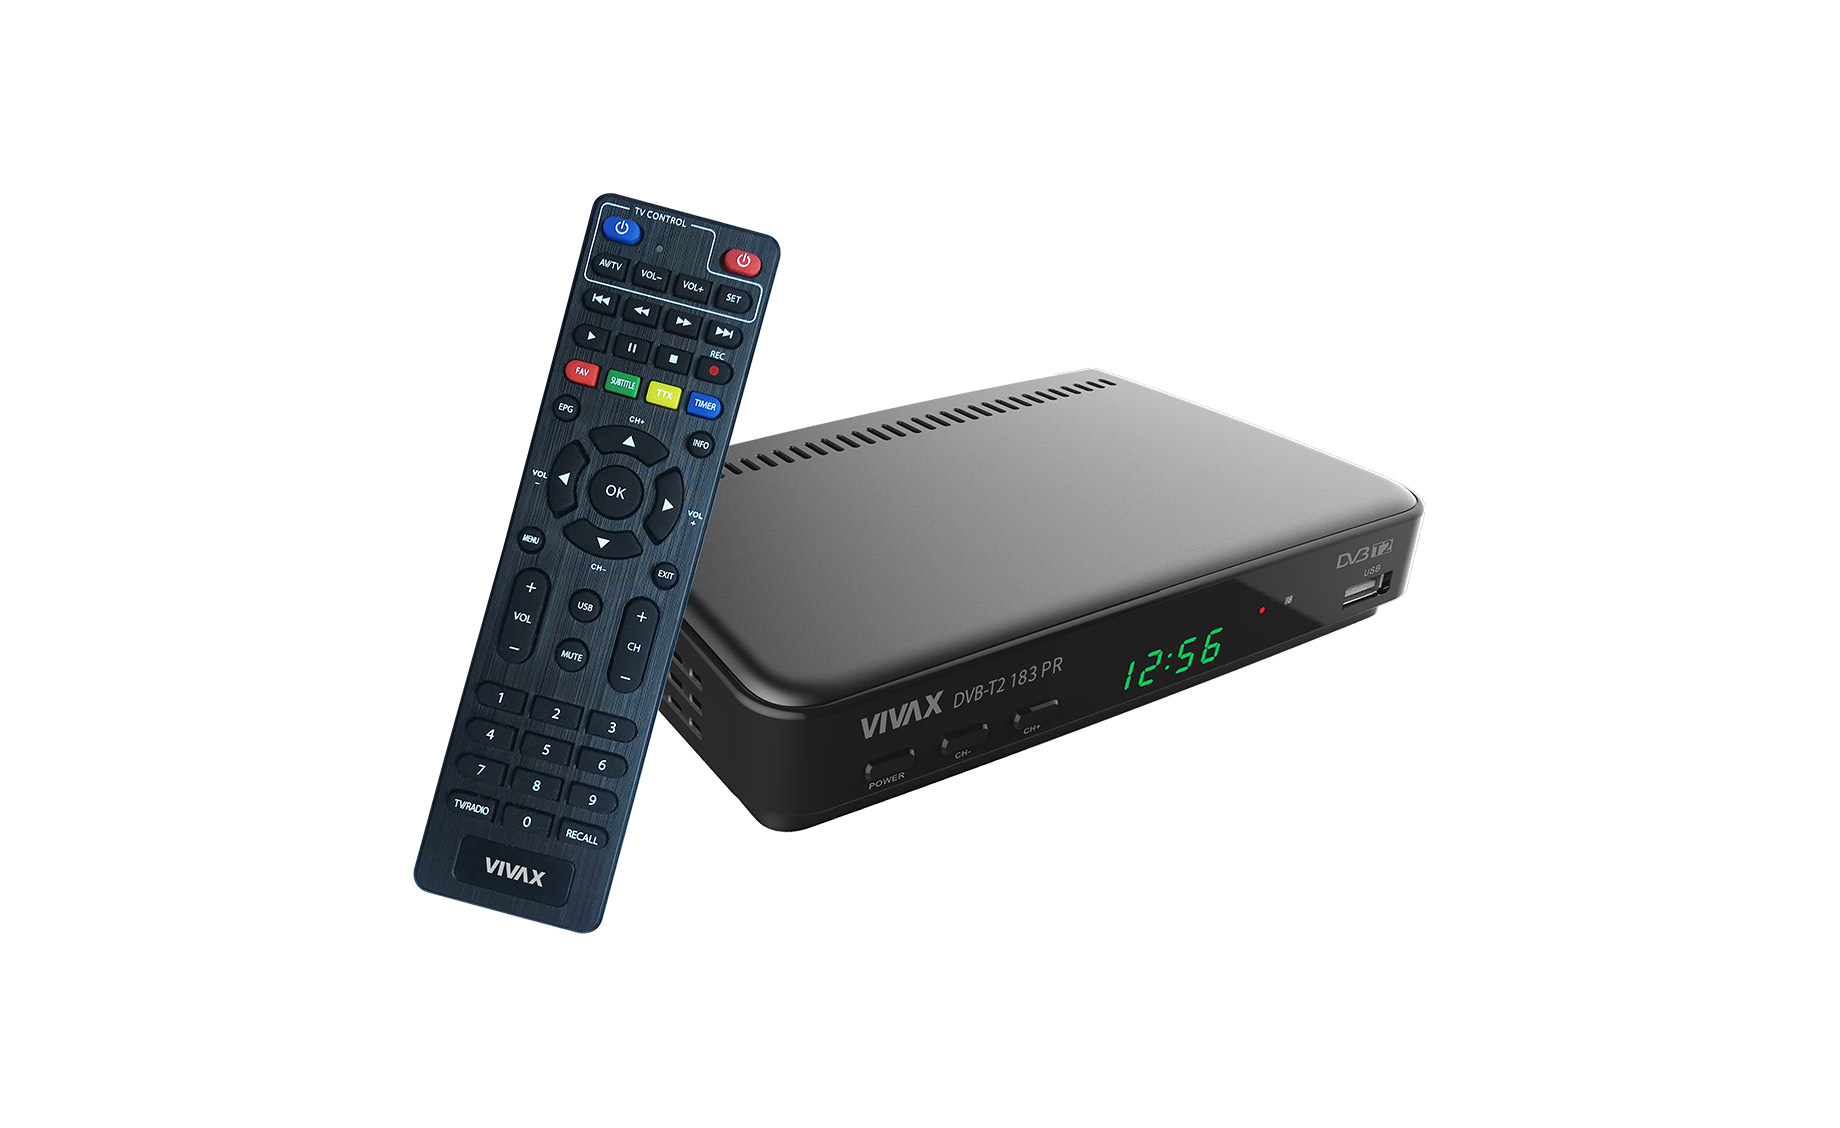 Vivax DVB-T2 183 PR digitalni zemaljski prijamnik